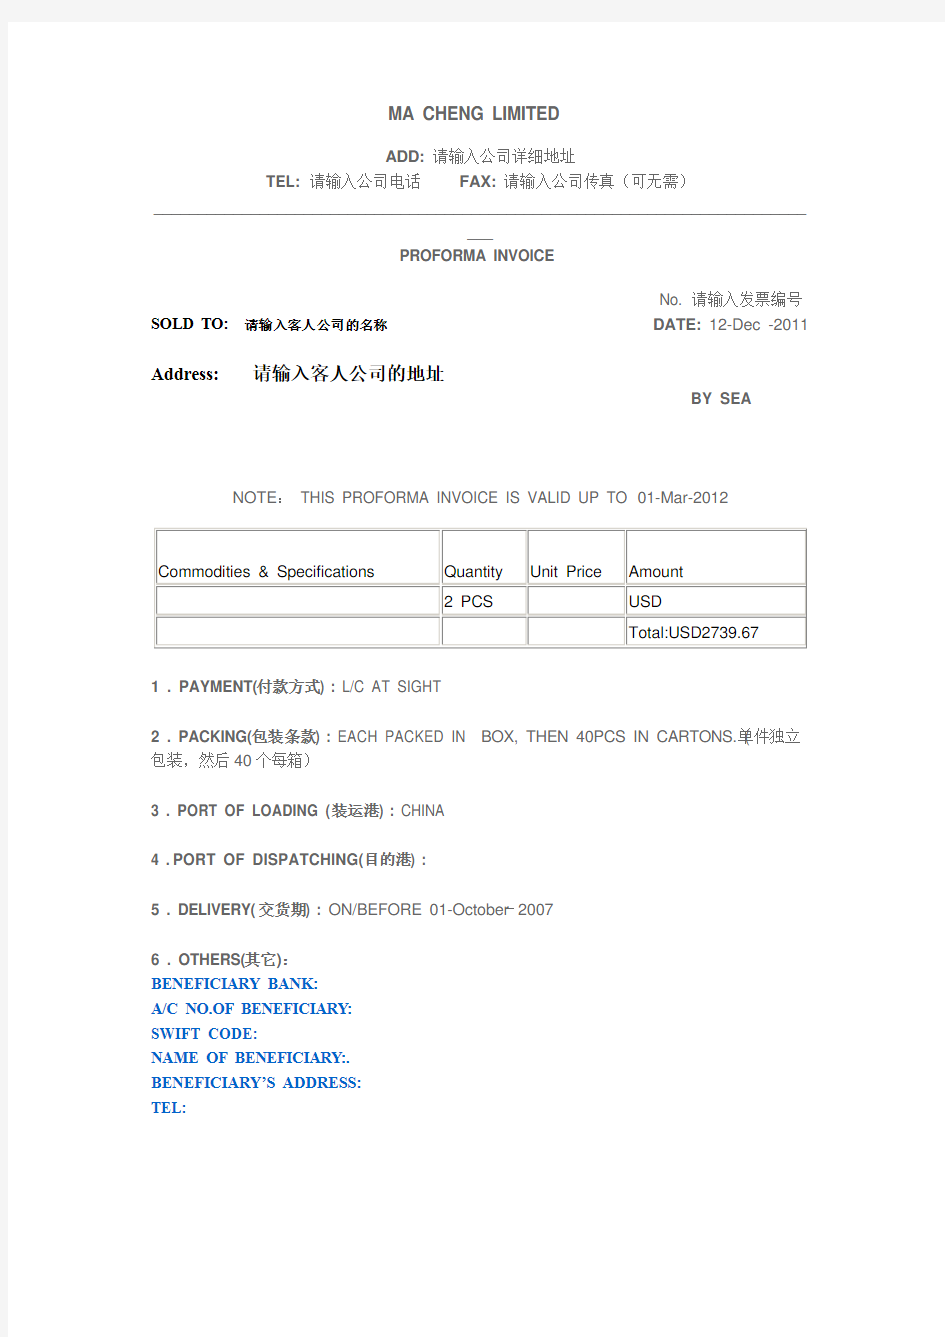 香港公司Invoice-香港公司发票-香港公司形式发票-香港公司收据-亦适用于某些海外公司及离岸公司使用